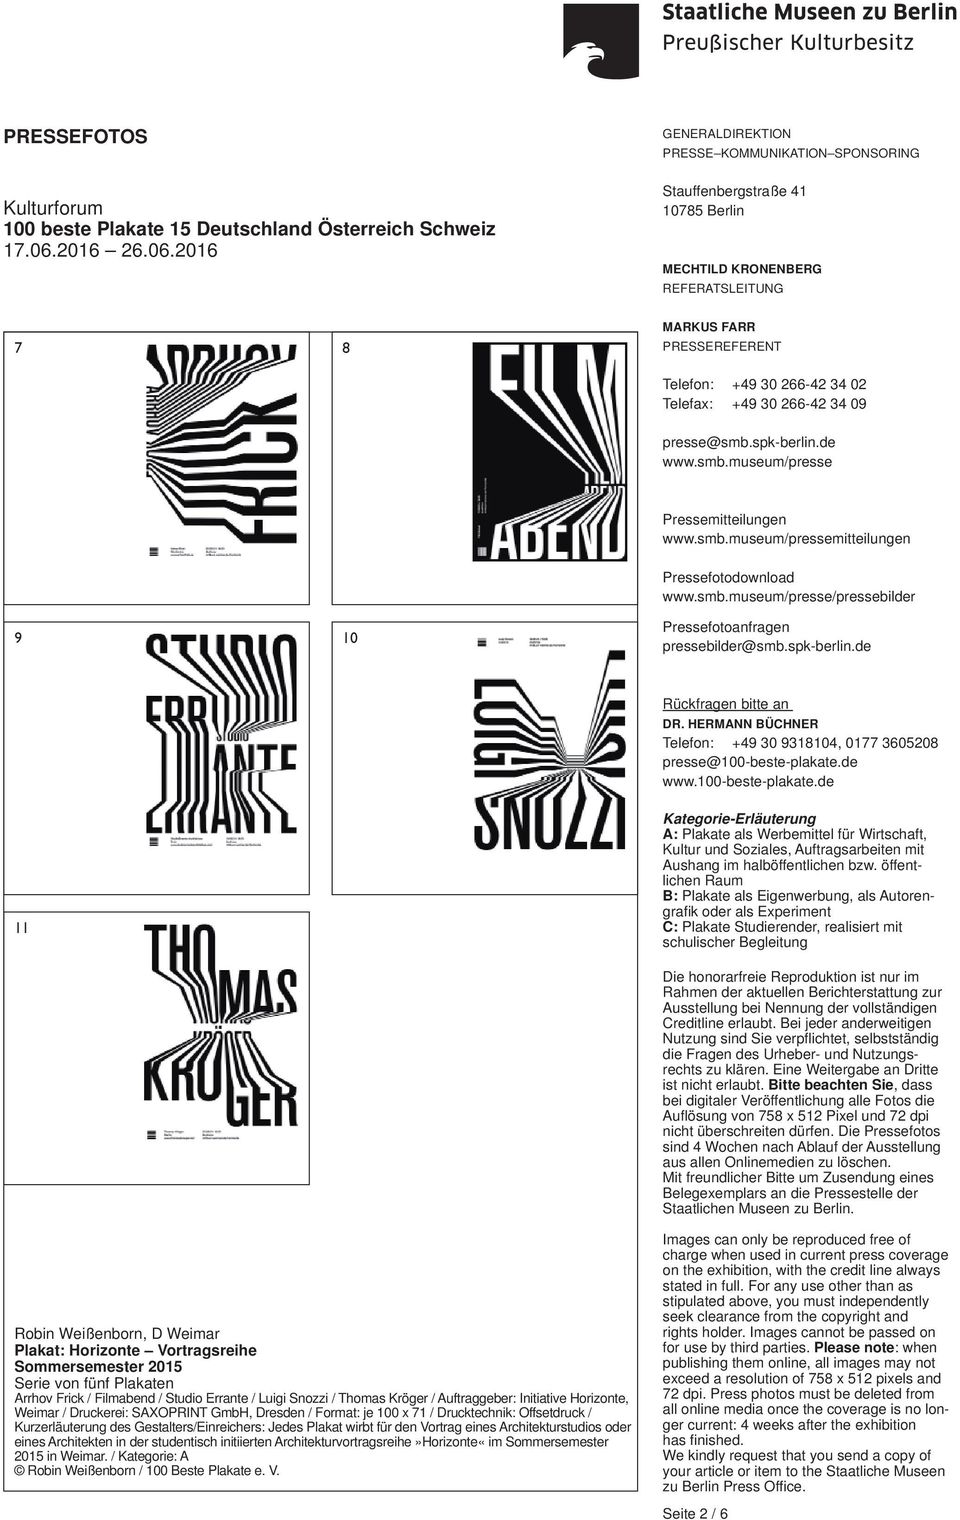 Drucktechnik: Offsetdruck / Kurzerläuterung des Gestalters/Einreichers: Jedes Plakat wirbt für den Vortrag eines Architekturstudios oder eines Architekten